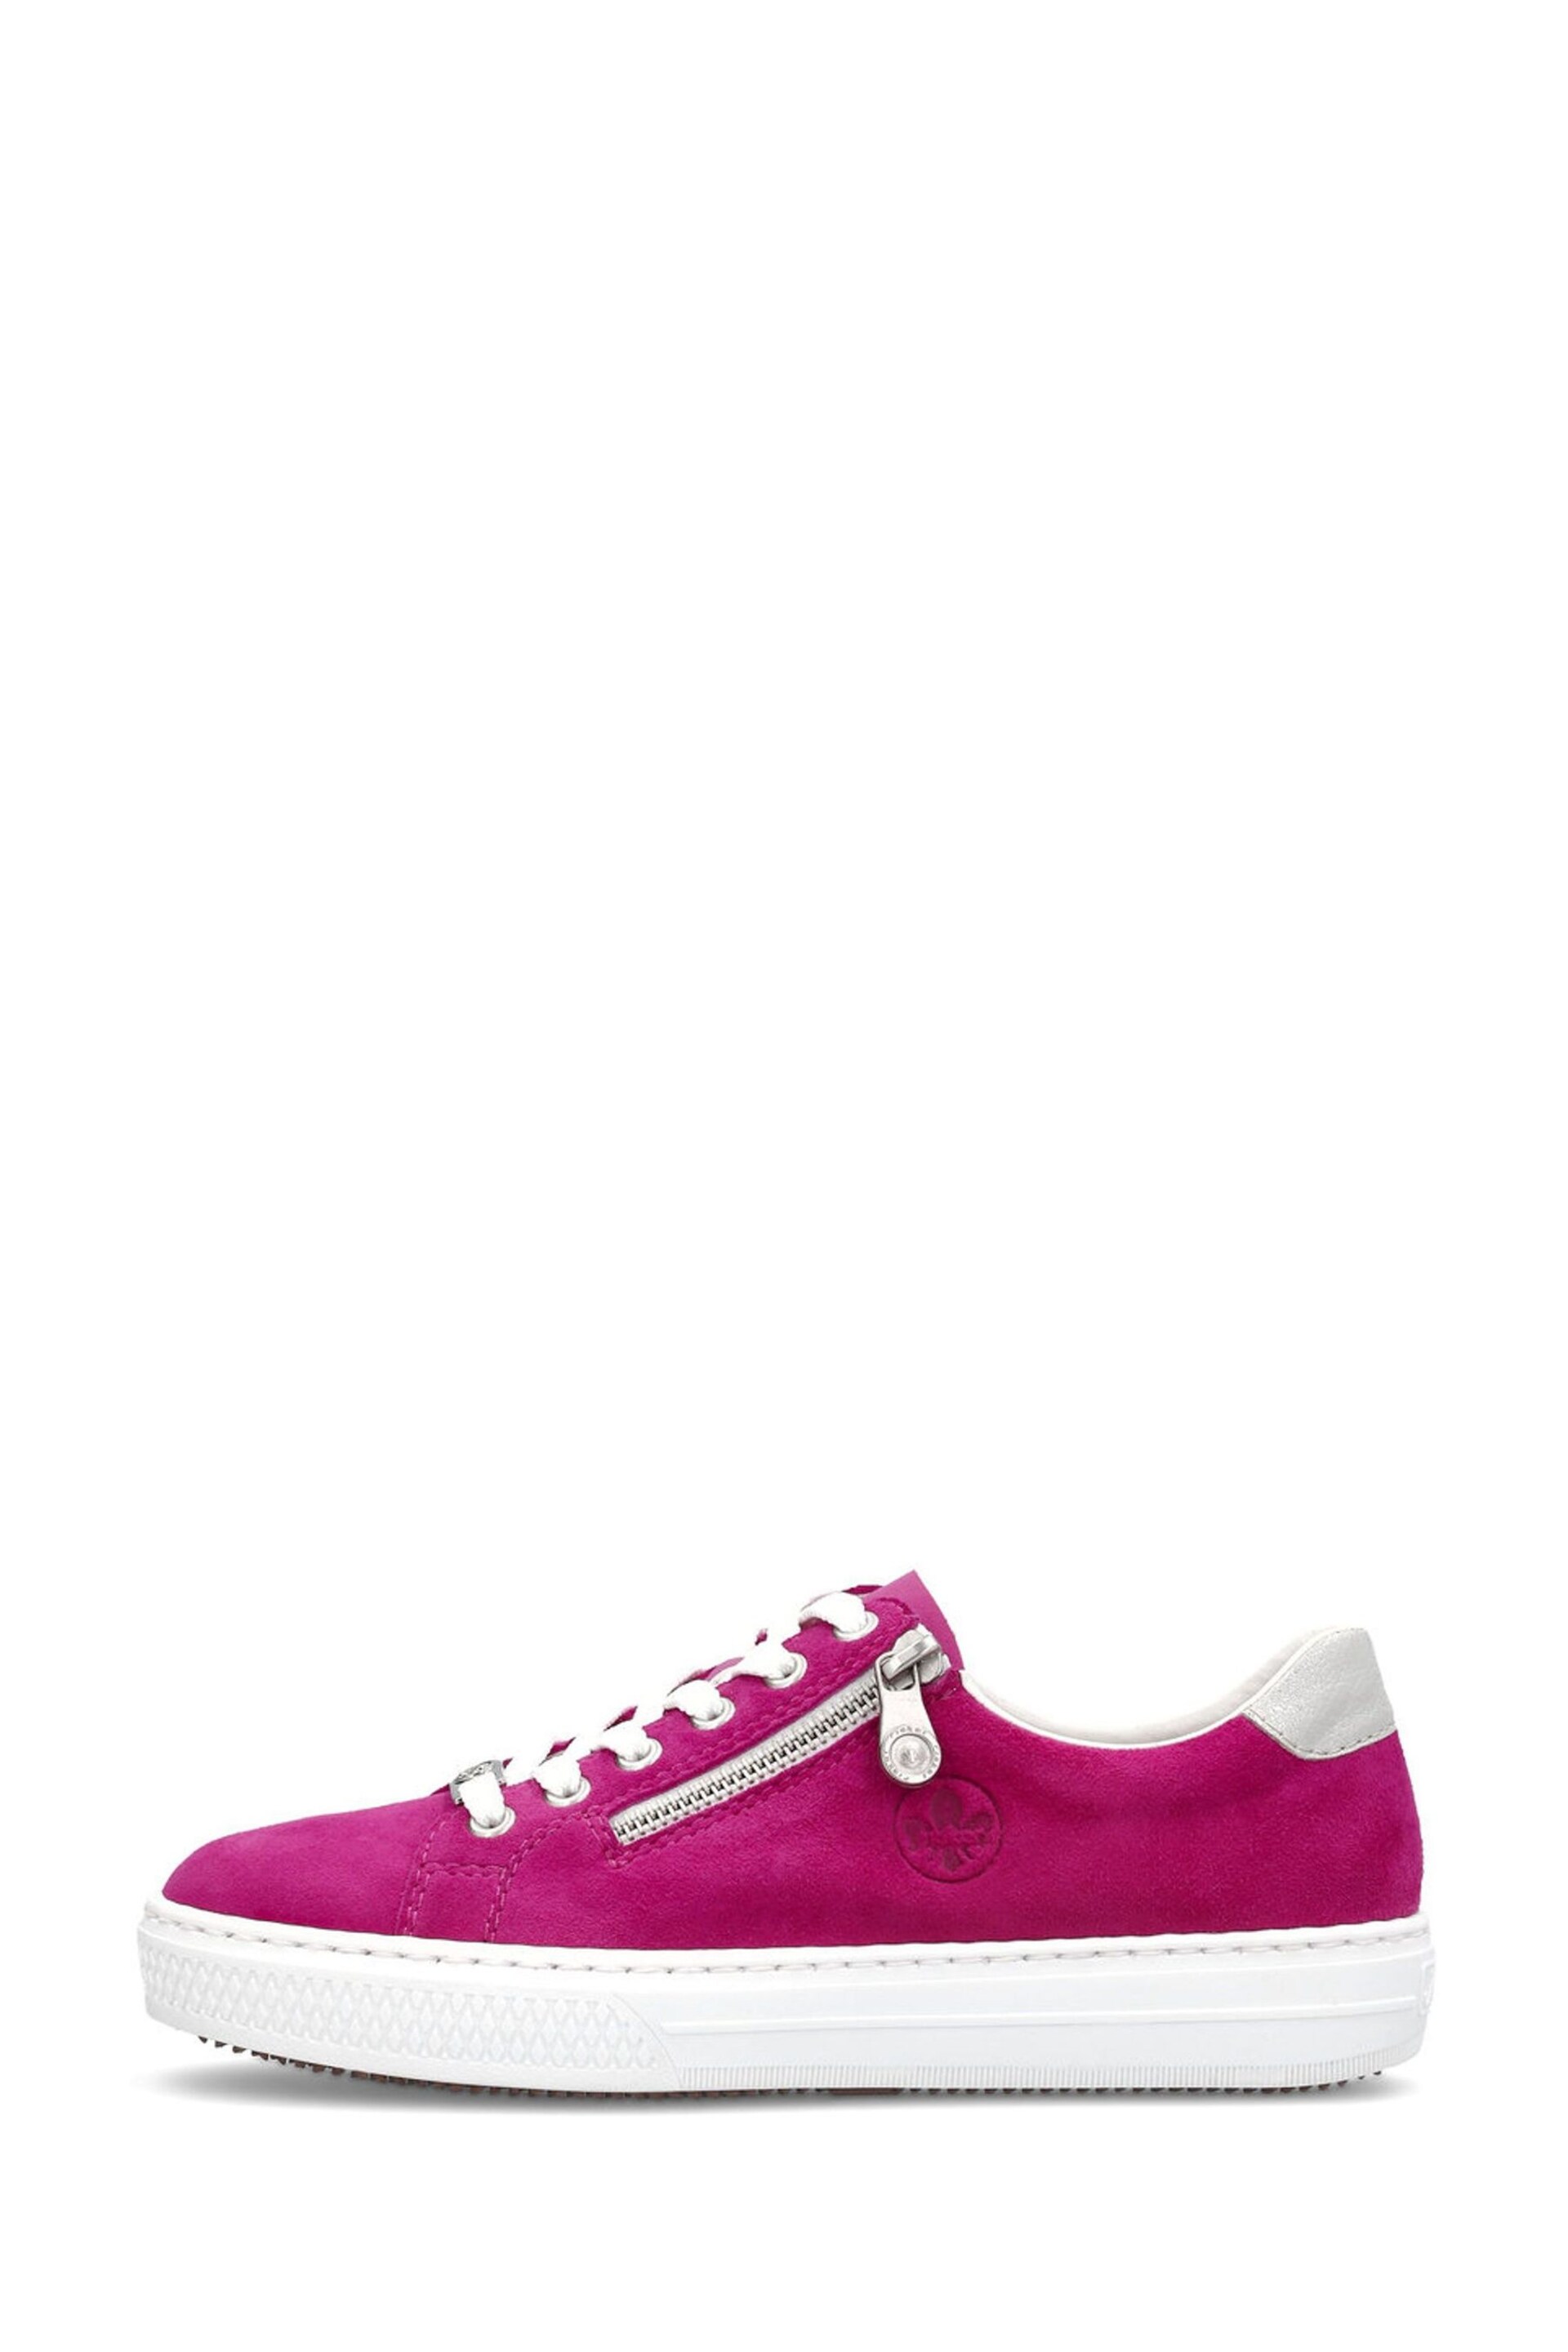 Rieker Womens Pink Zipper Shoes - Image 2 of 10